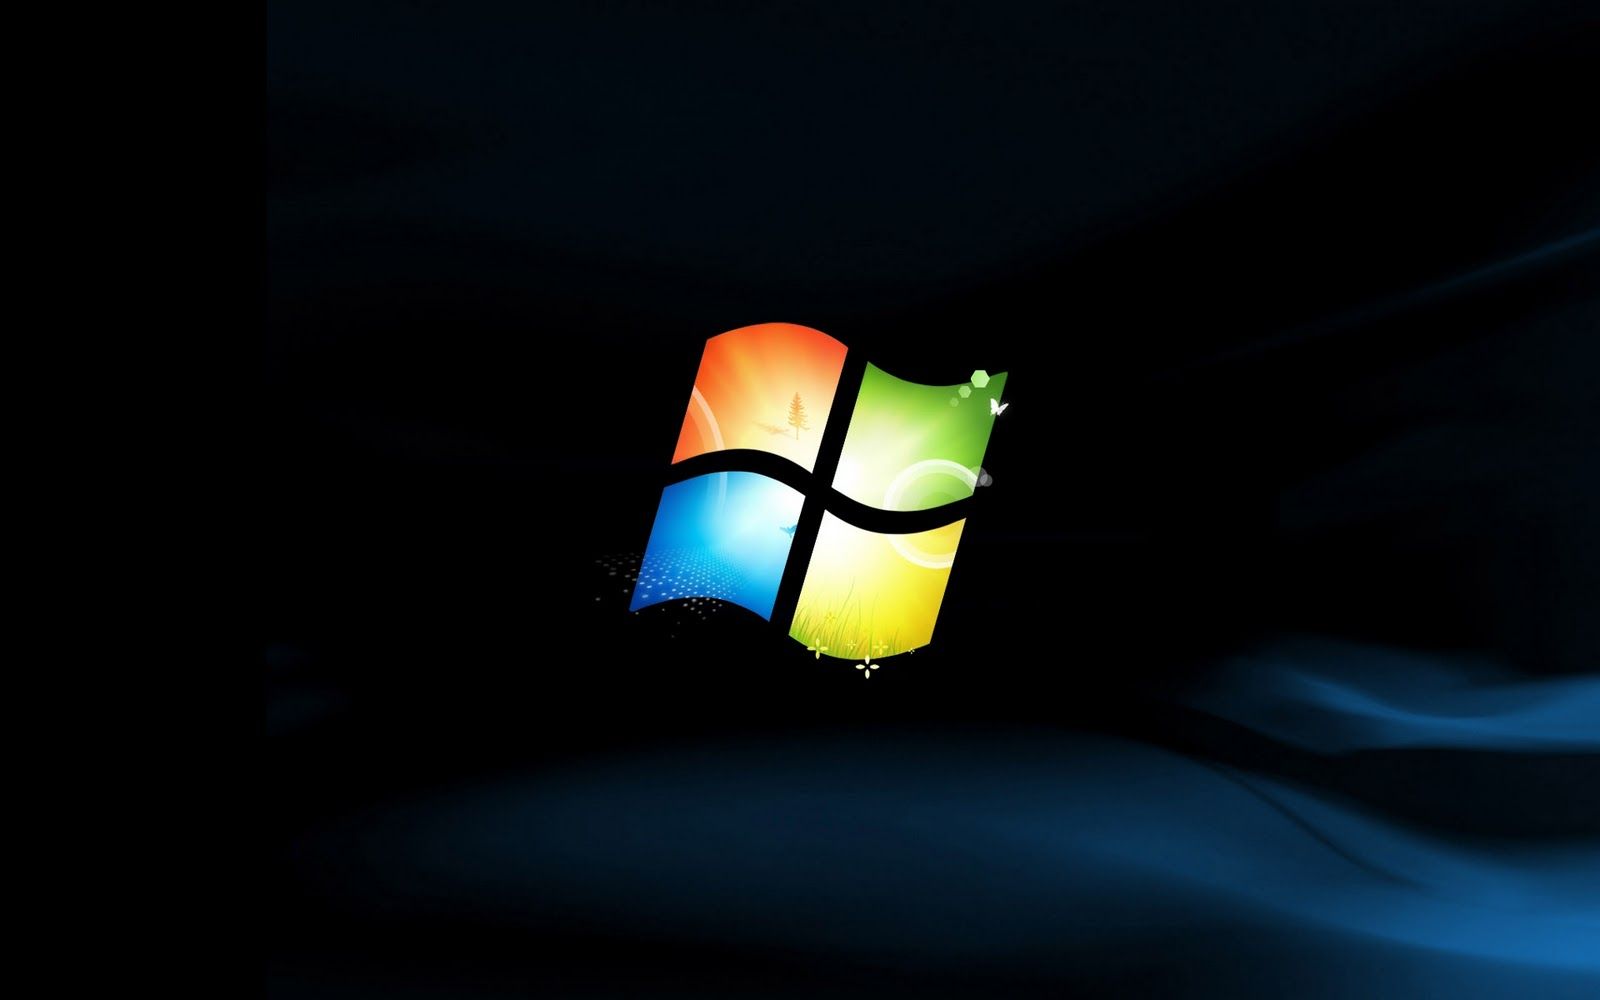 Hình nền Windows 7 trên WallpaperDog Với hơn 1 triệu hình nền duy nhất, WallpaperDog chính là nơi lý tưởng để tìm kiếm hình nền Windows 7 ưng ý. Với rất nhiều thể loại hình ảnh và độ phân giải cao, bạn sẽ tìm thấy những bức tranh ấn tượng và thú vị. Khám phá ngay để biến máy tính của bạn trở nên nổi bật và độc đáo hơn bao giờ hết!